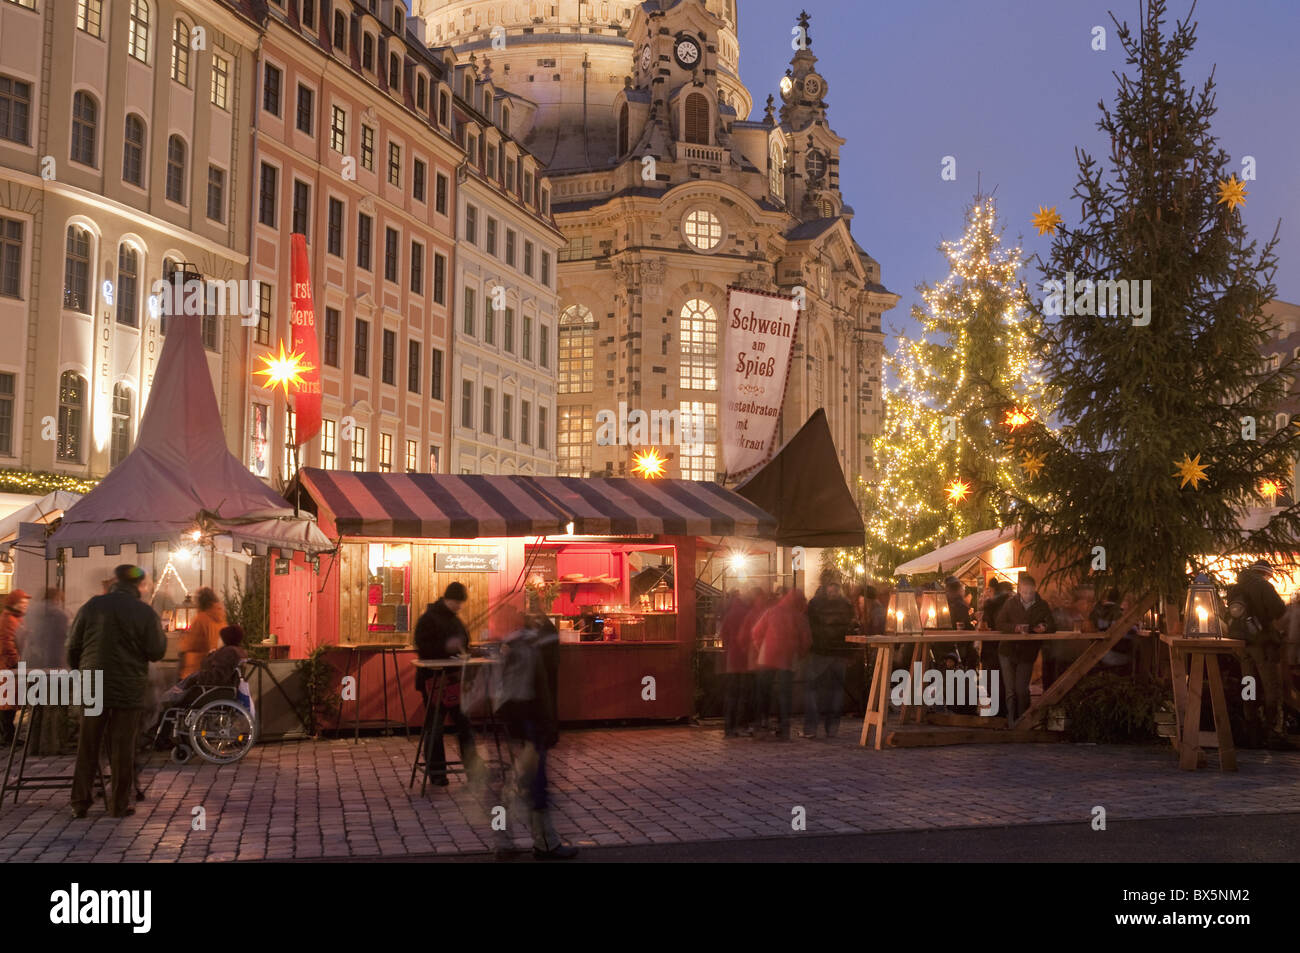 Mercatino di Natale bancarelle di fronte Frauen Chiesa e albero di Natale al crepuscolo, Neumarkt Innere Altstadt, Dresda, Germania Foto Stock